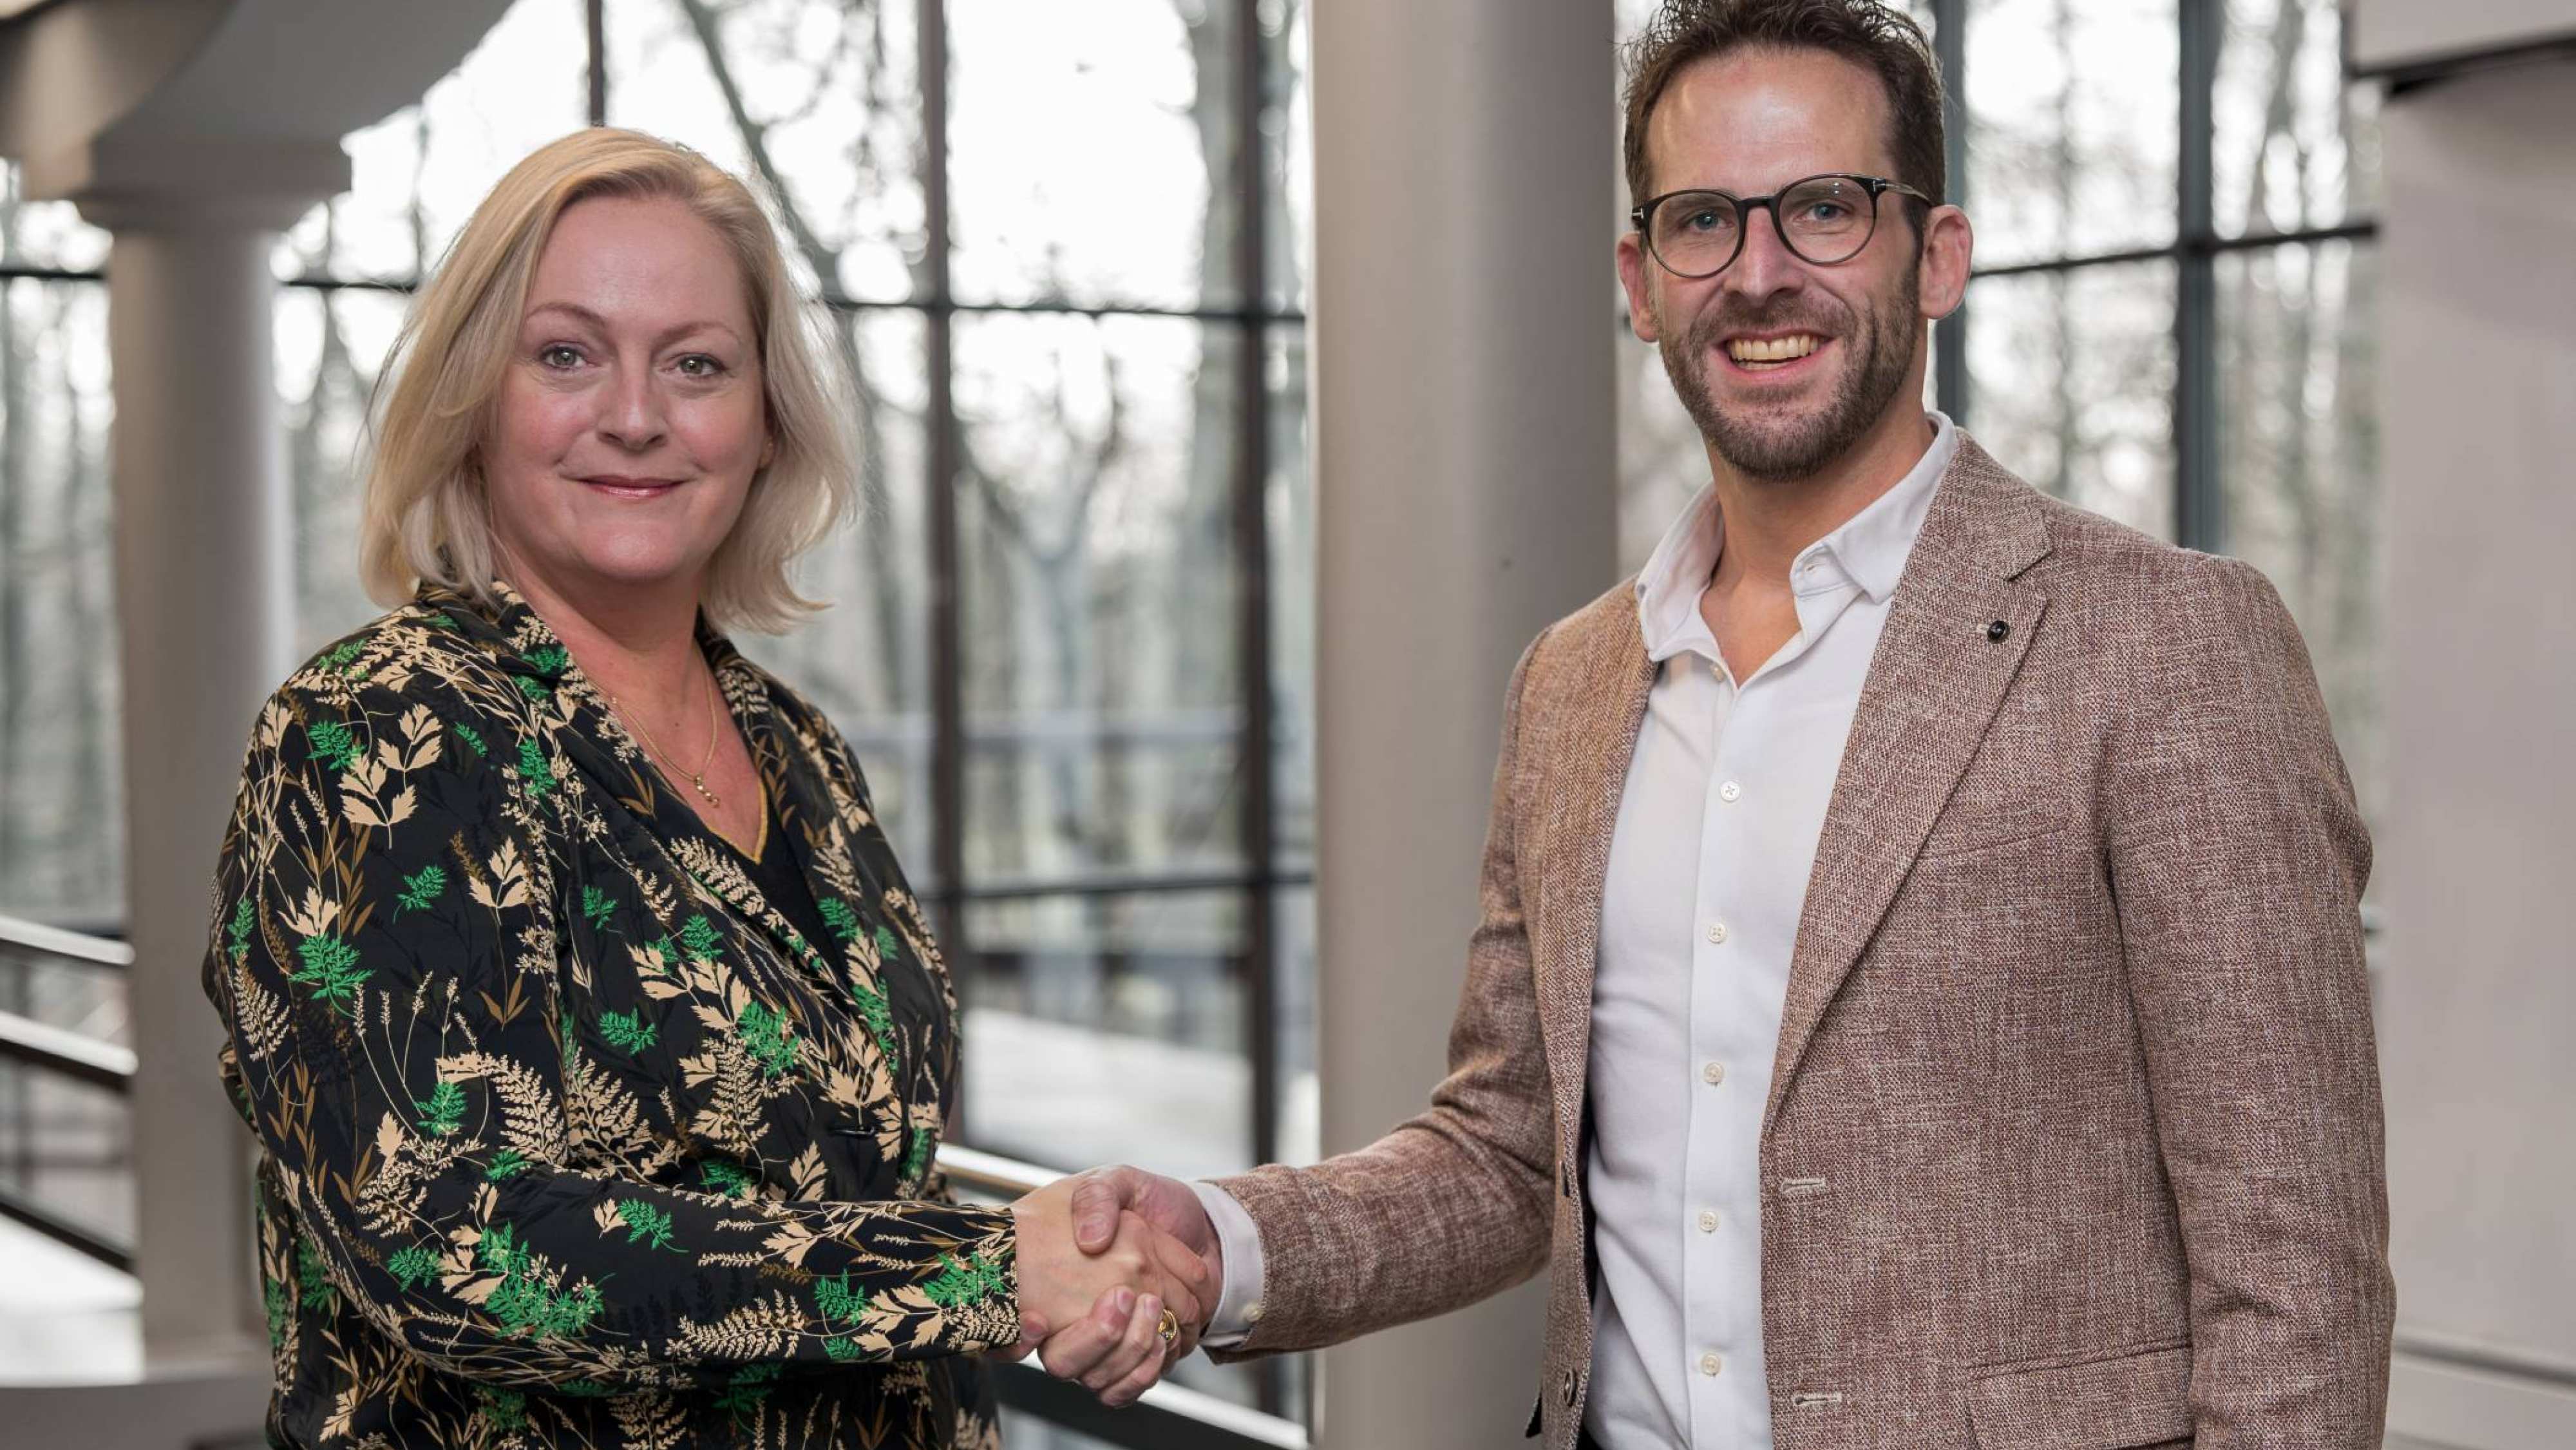 Petra van Halteren van de HAN en Bart Stolk van Business School Nederland schudden elkaar de hand